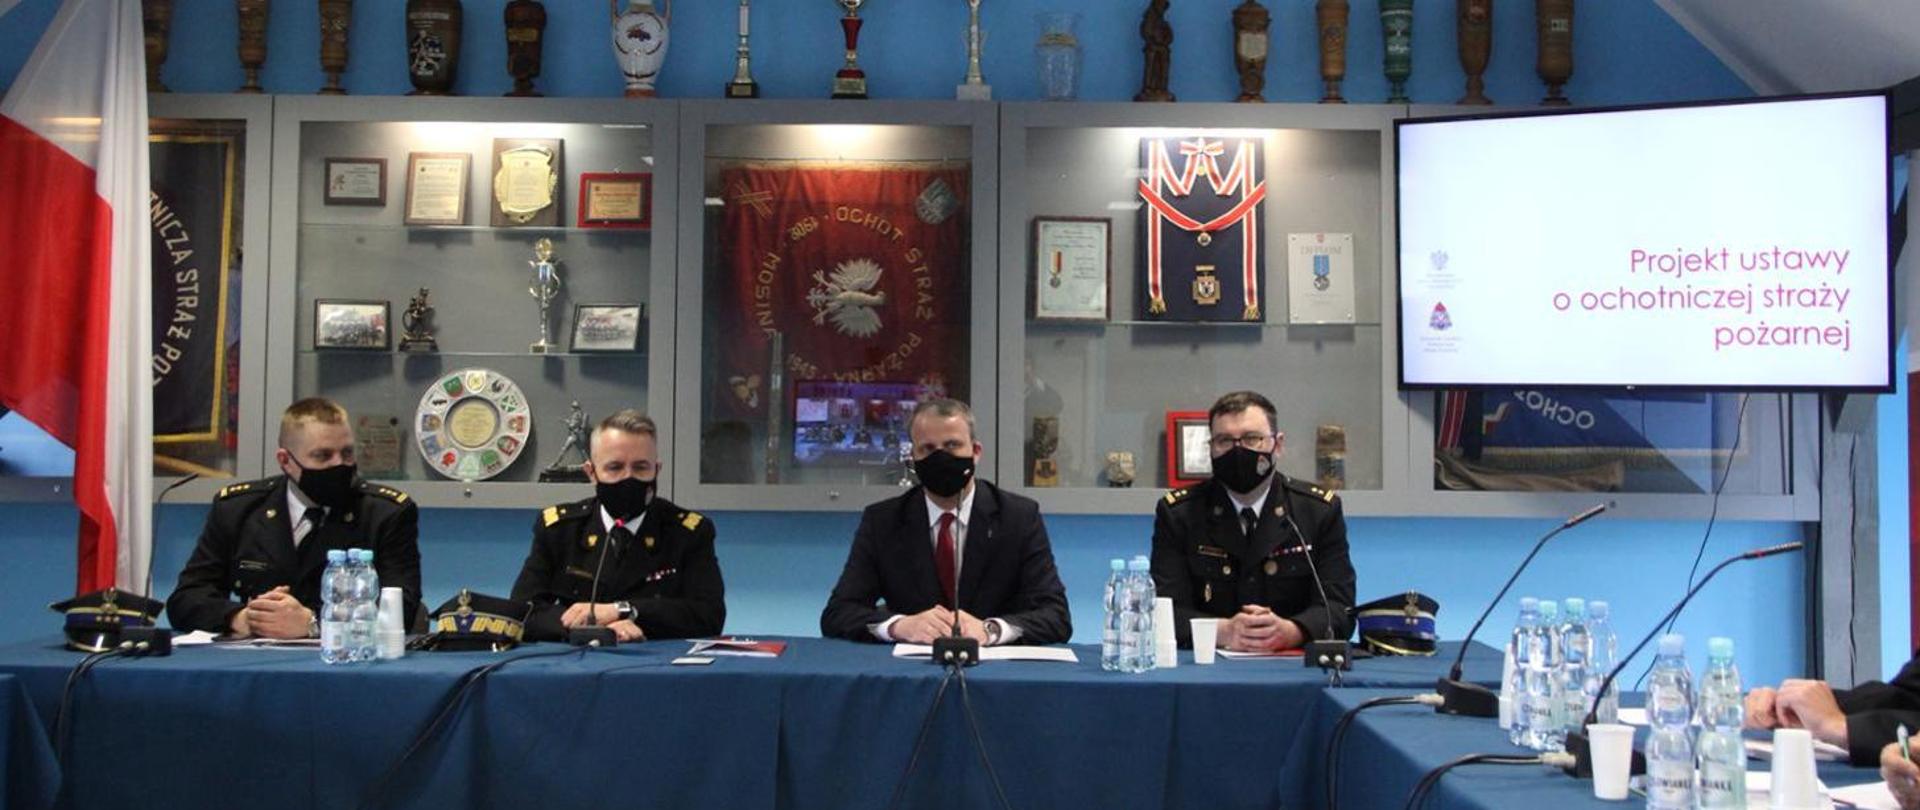 Zdjęcie przedstawia czterech mężczyzn siedzących przy stole z niebieskim płótnem. Trzech z nich jest w czarnych mundurach strażackich a jeden w czarnym garniturze. Wszyscy mają na twarzy założone maseczki. Za nimi widać szafy z szybami, w których znajdują się sztandary, puchary, dyplomy i odznaczenia. Obok wisi ekran multimedialny, na którym pokazana jest plansza z napisem Projekt ustawy o ochotniczej straży pożarnej. Z drugiej strony obrazka znajduje się flaga Polski.